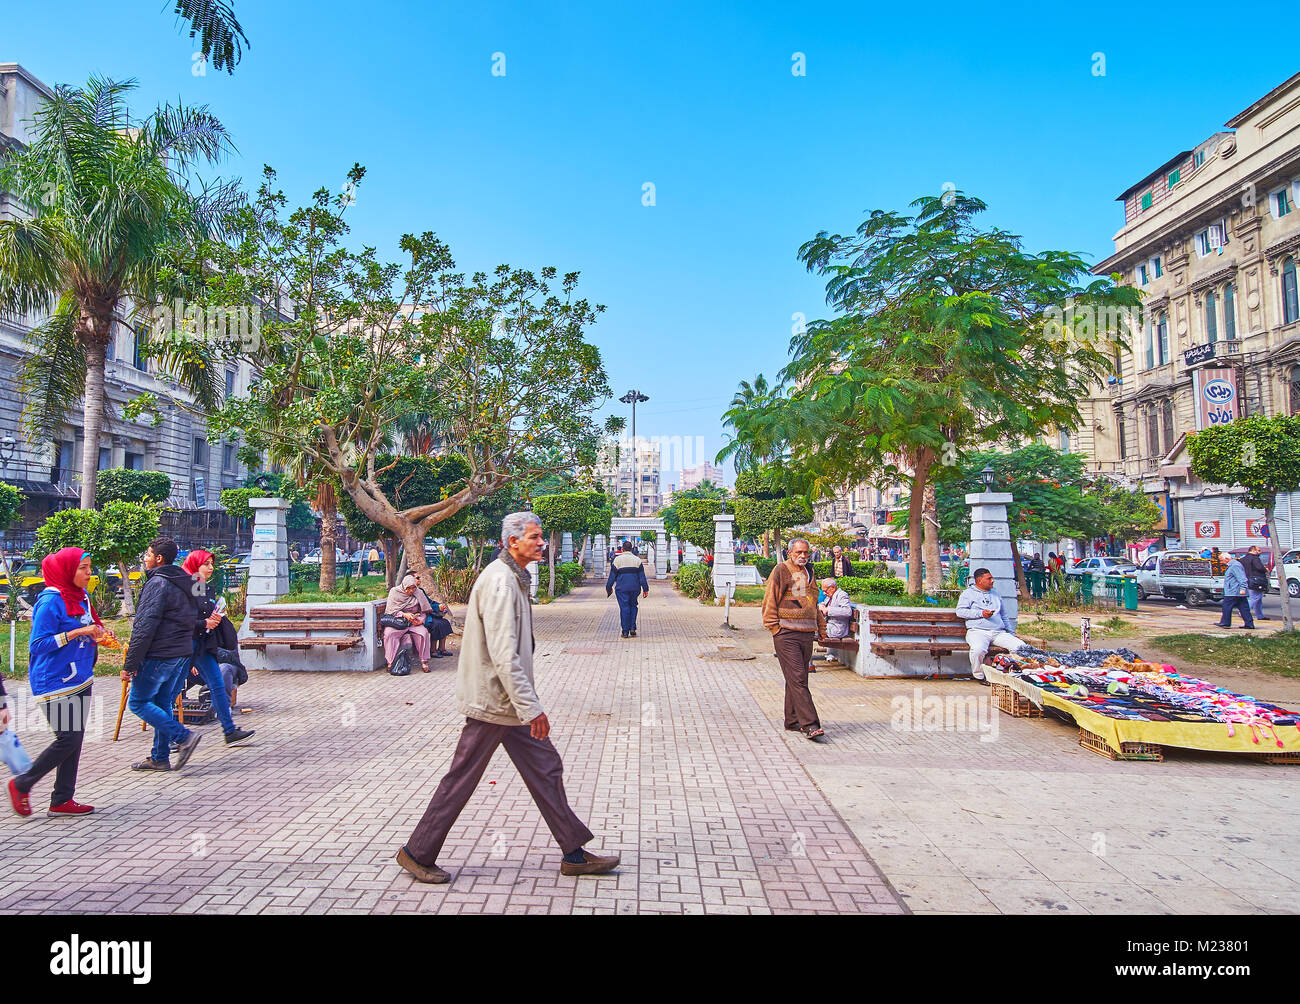 Alessandria, Egitto - 17 dicembre 2017: Il verde parco occupa il affollata piazza El-Tahrir, qui ci sono sempre molte persone e spontaneo le bancarelle del mercato Foto Stock